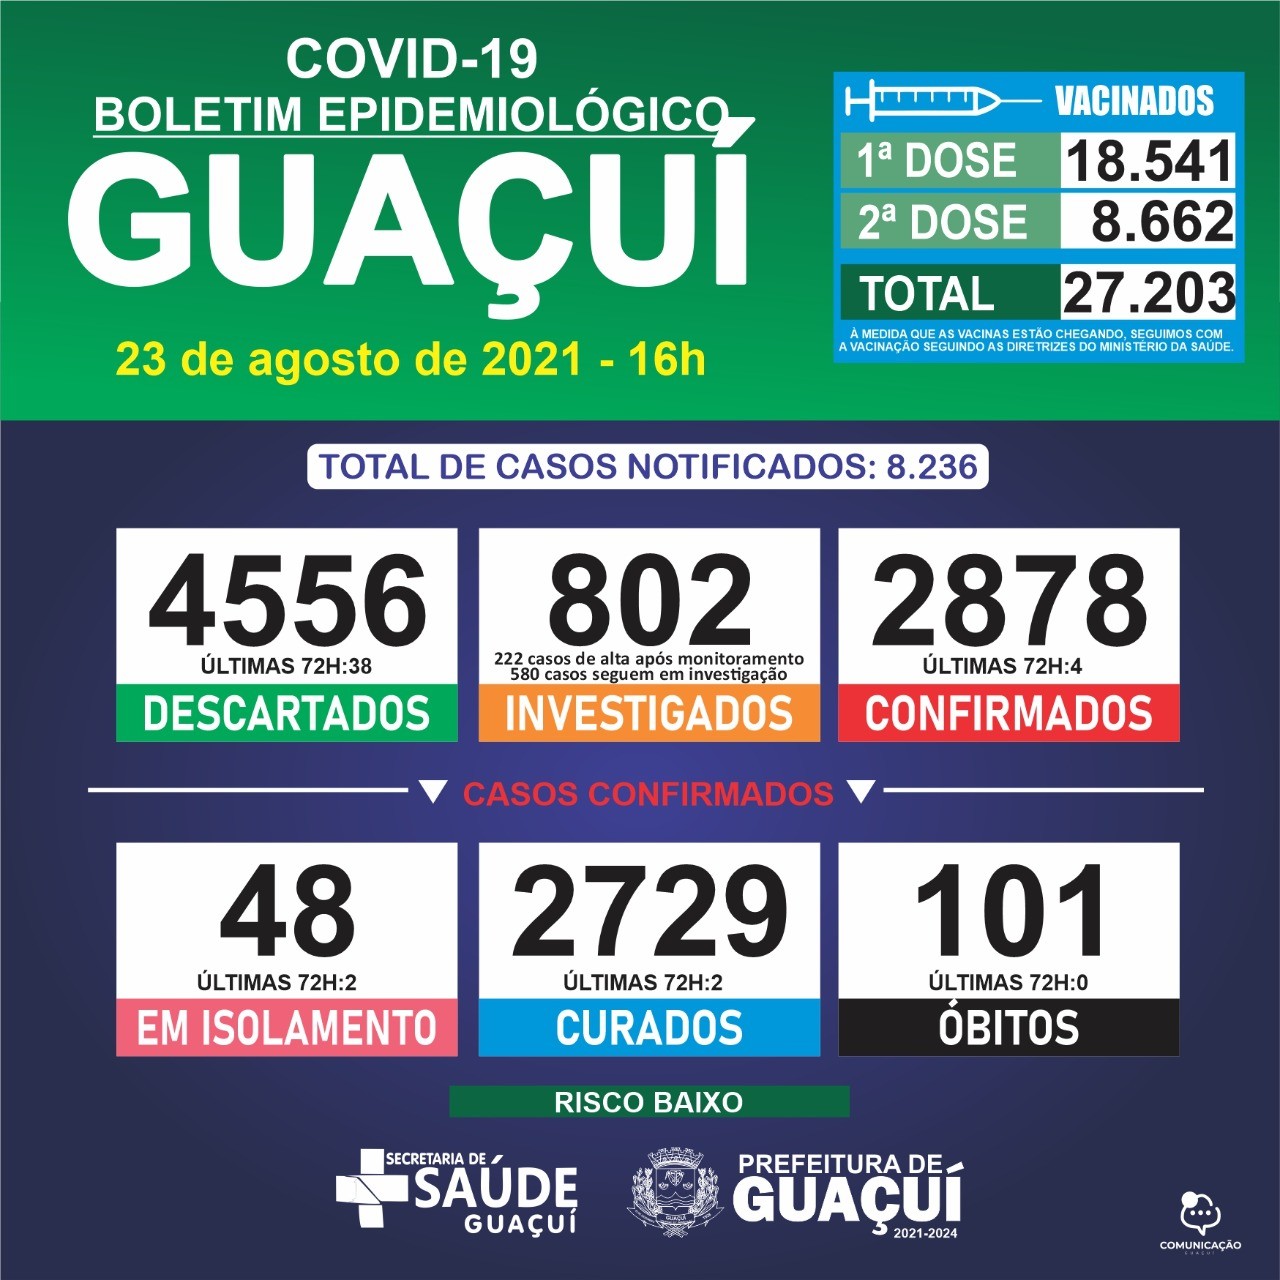 Boletim Epidemiológico 23/08/21: Guaçuí registra 4 casos confirmados e 2 curados nas últimas 72 horas